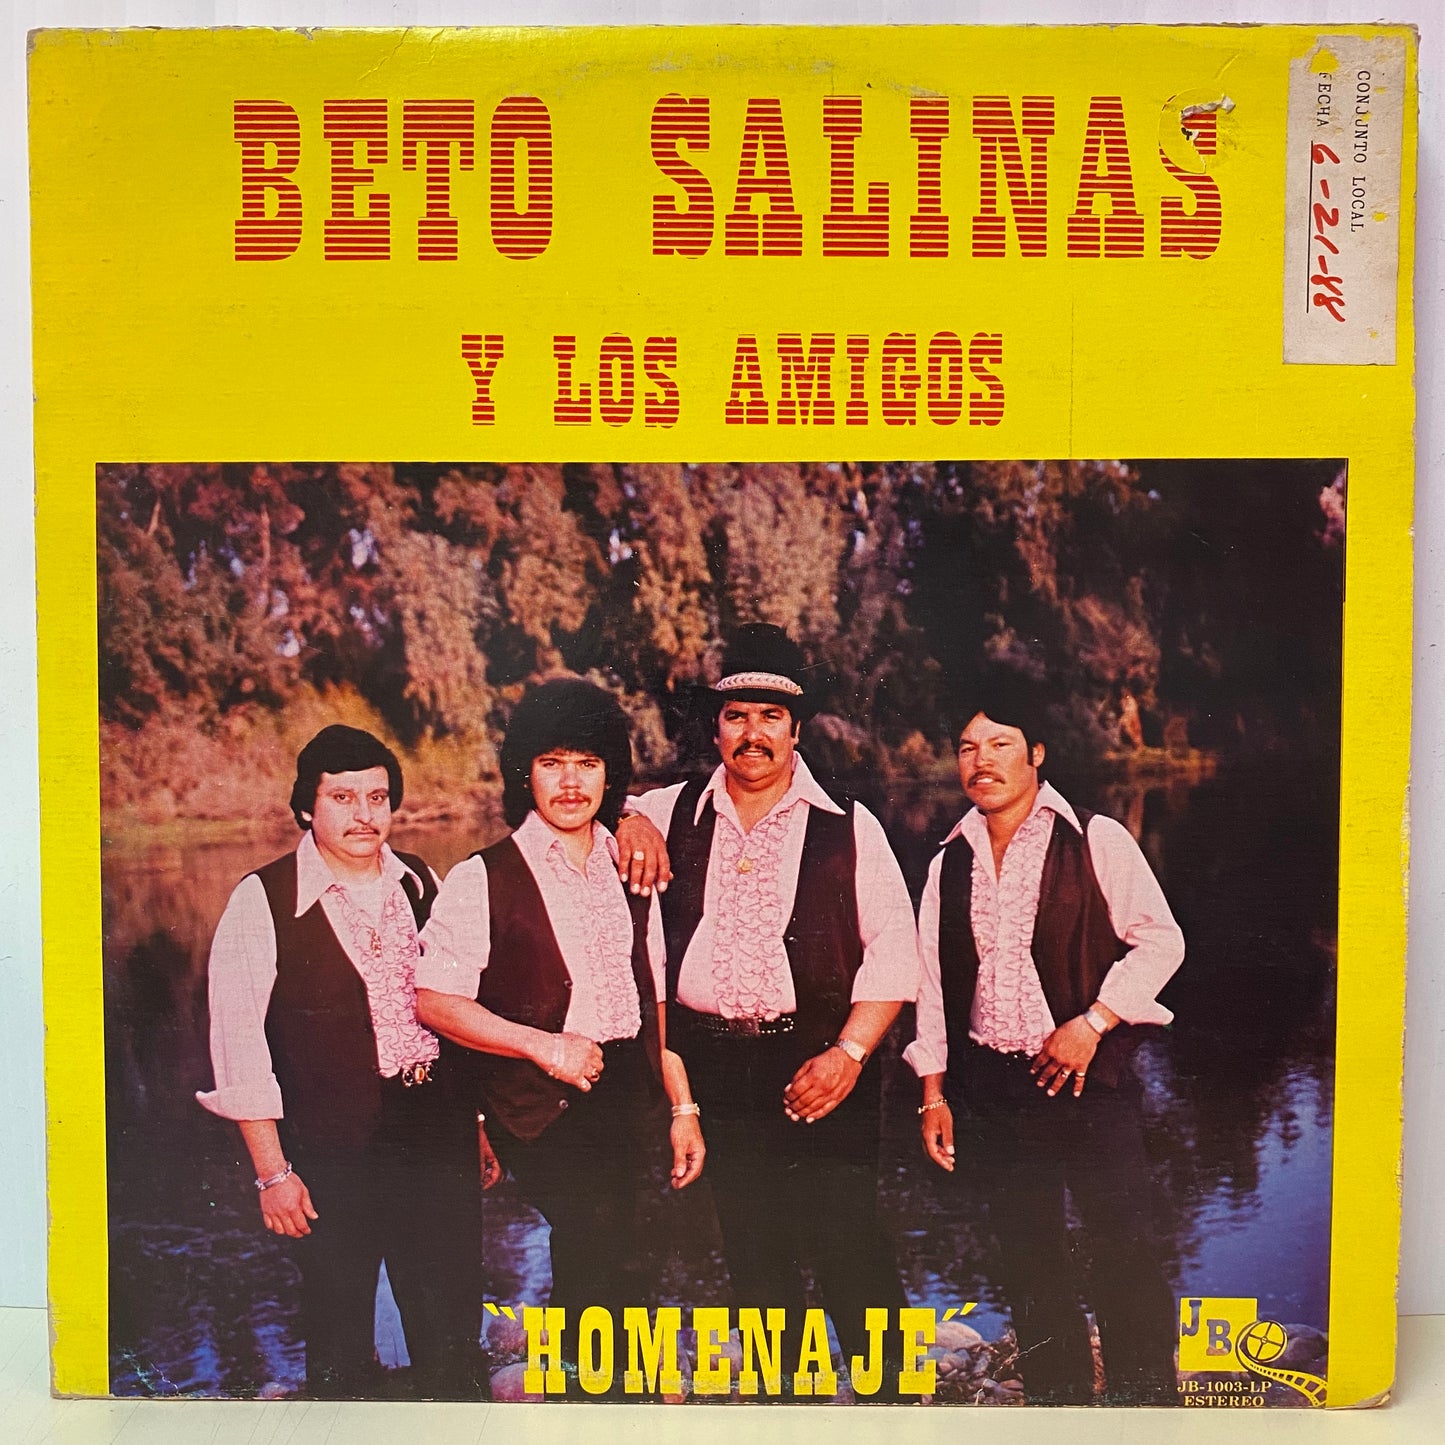 Beto Salinas y Los Amigos - Homenaje (Vinyl)